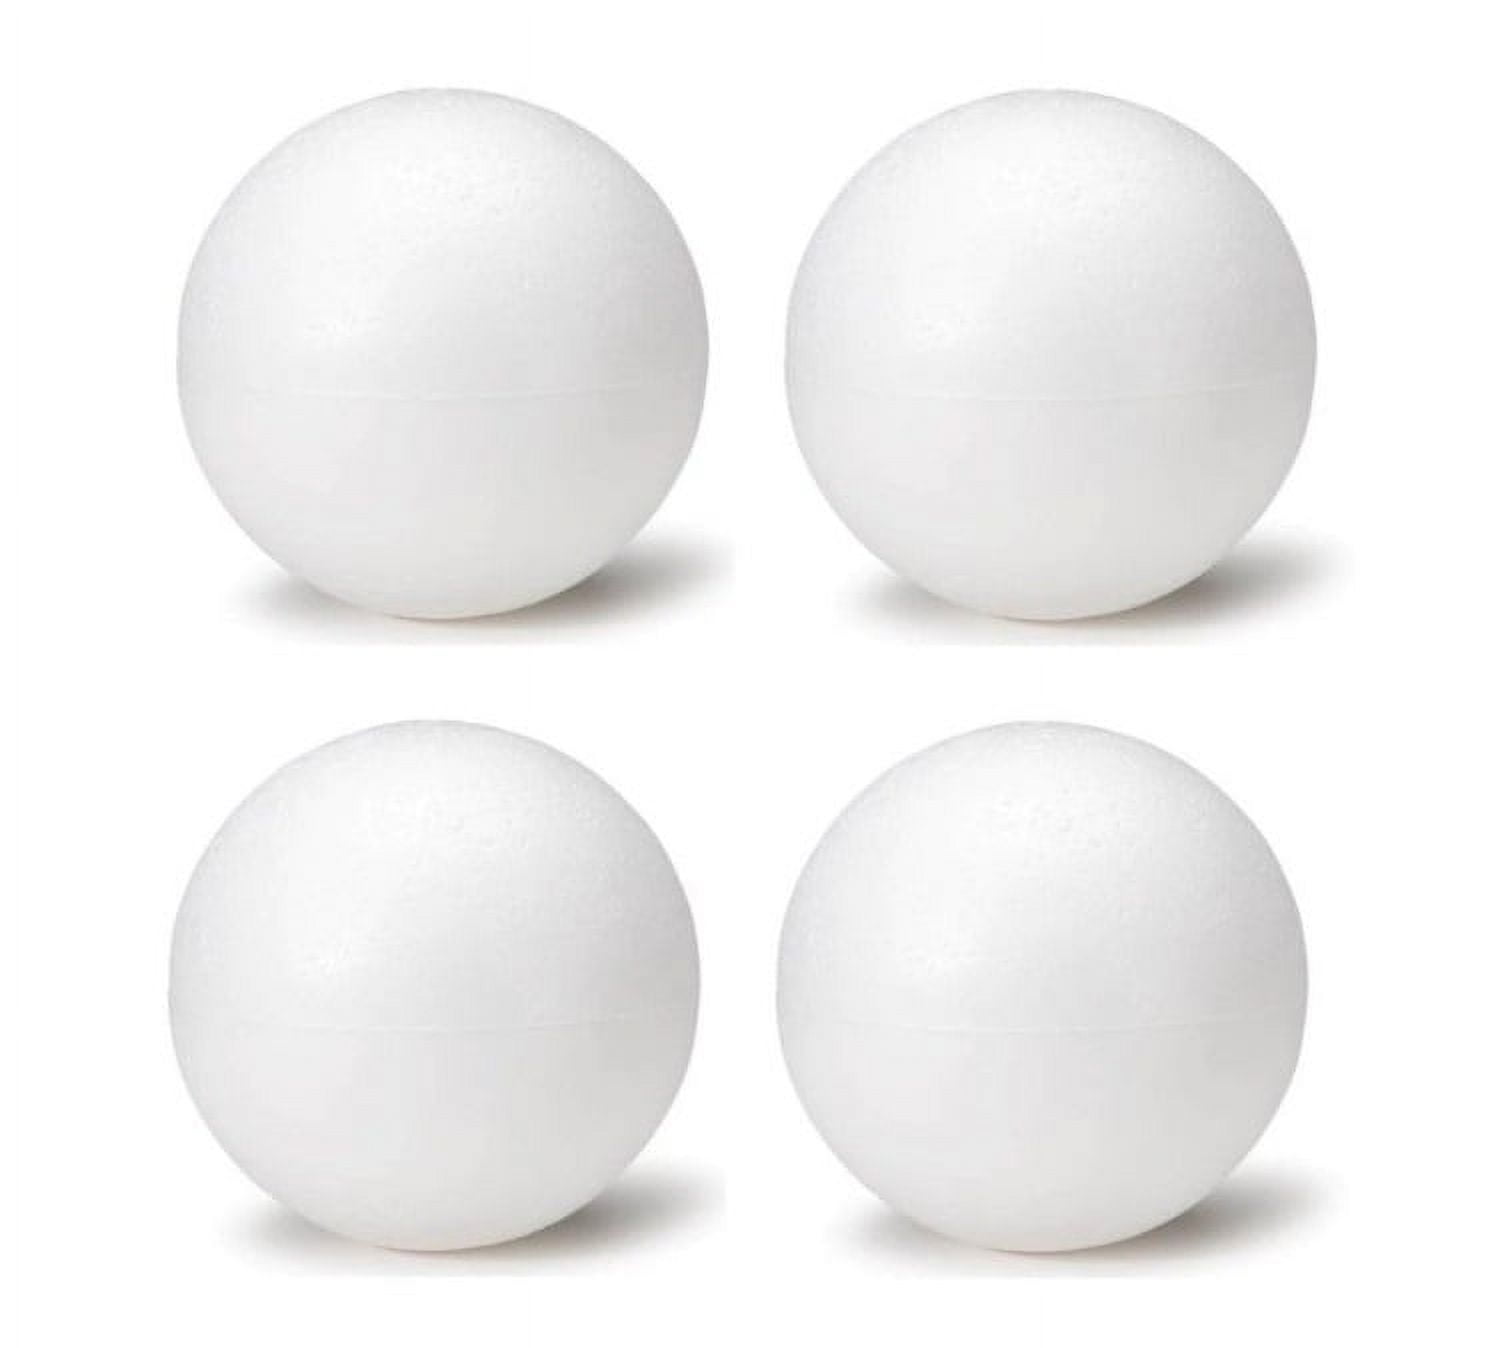  Styrofoam Balls 4 Inch Bulk